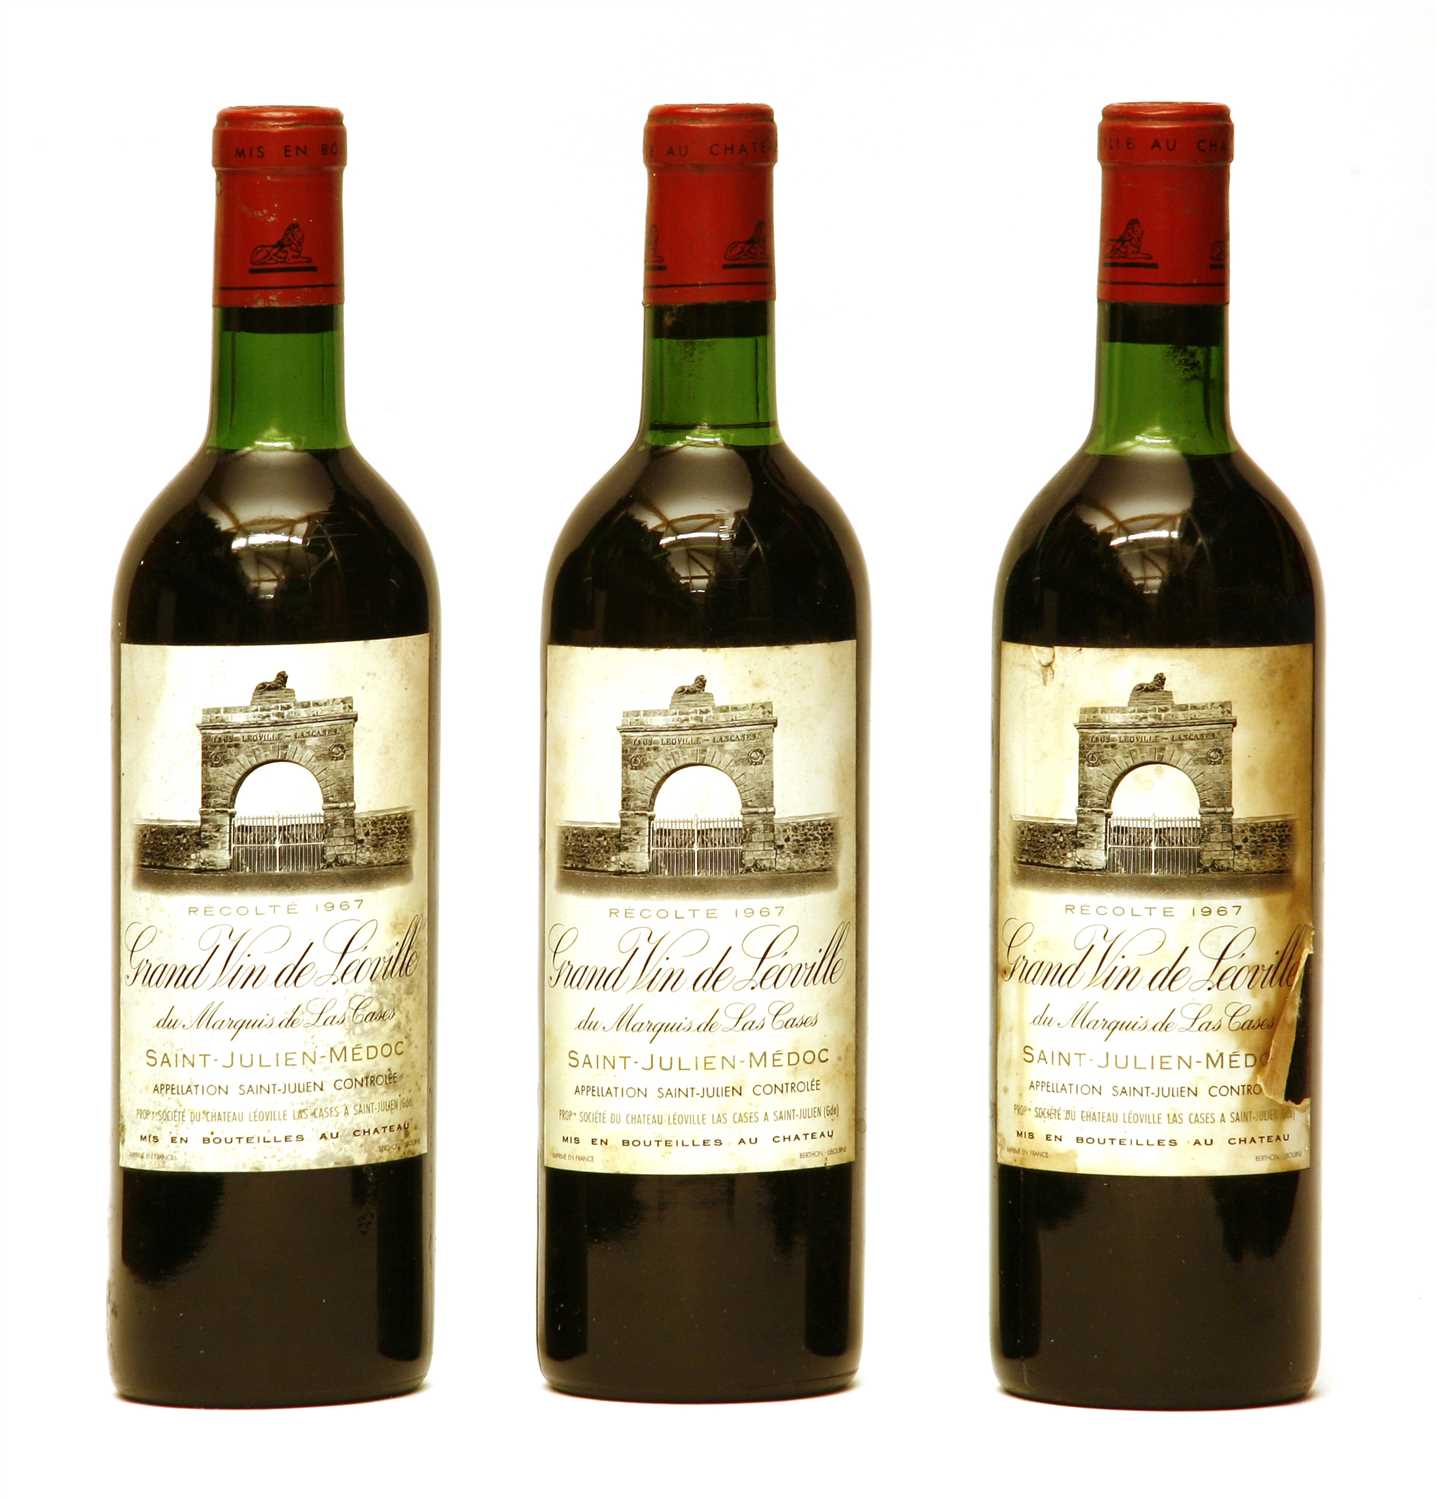 Lot 210 - Grand Vin de Leoville du Marquis de Las Cases, Saint-Julien, 2nd growth, 1967, three bottles